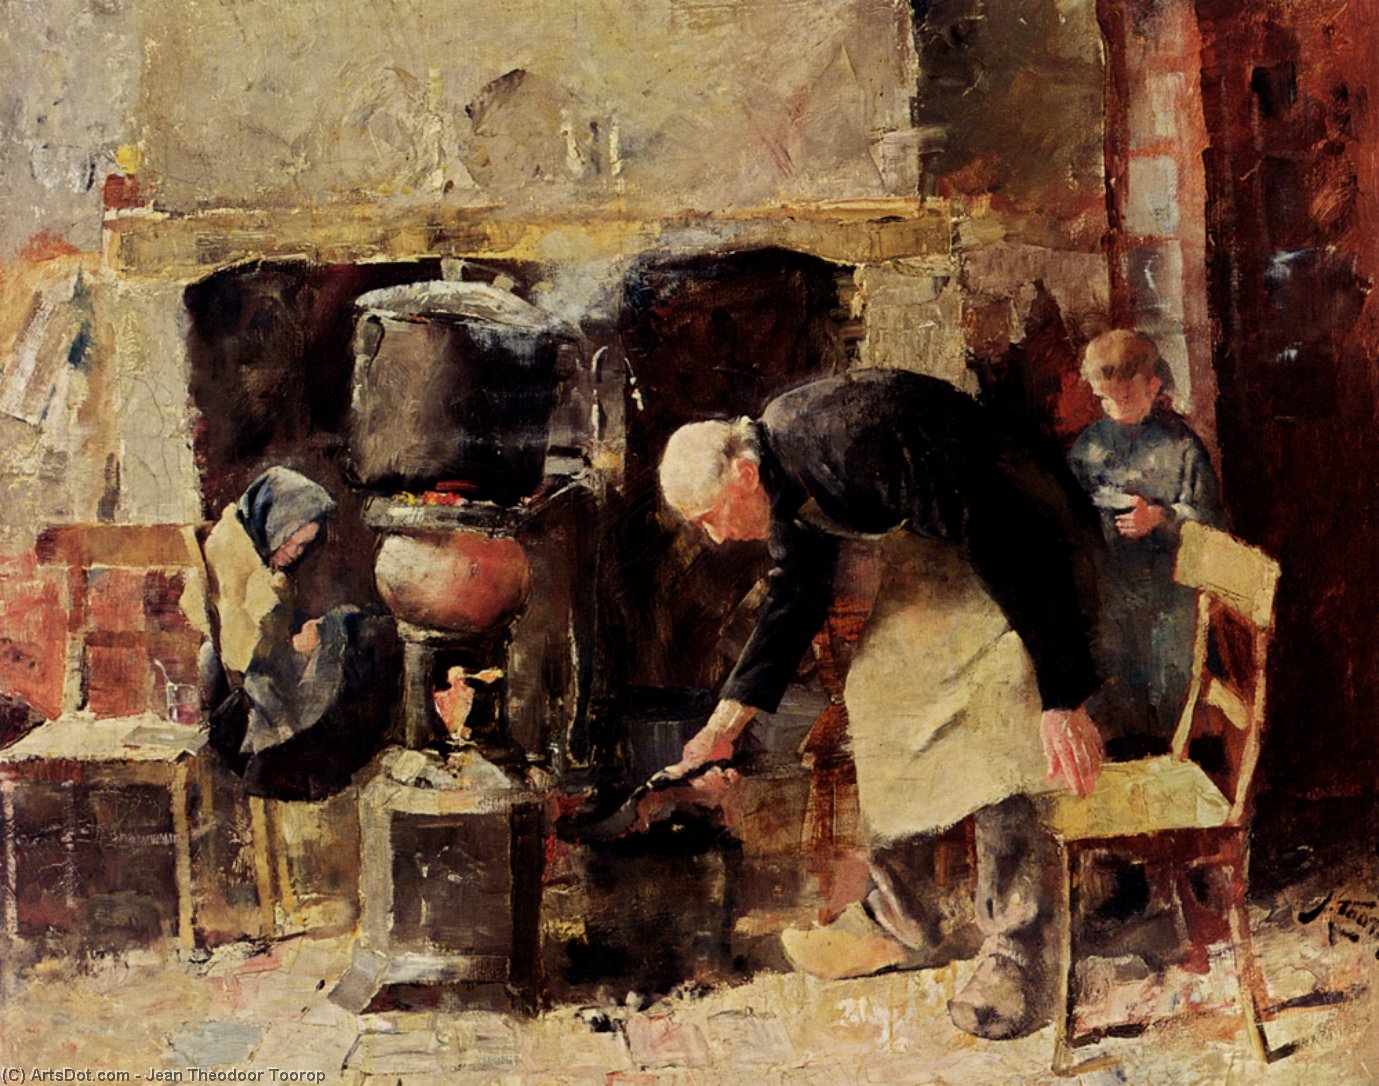 Wikioo.org - The Encyclopedia of Fine Arts - Painting, Artwork by Jean Theodoor Toorop - Preparing The Meal